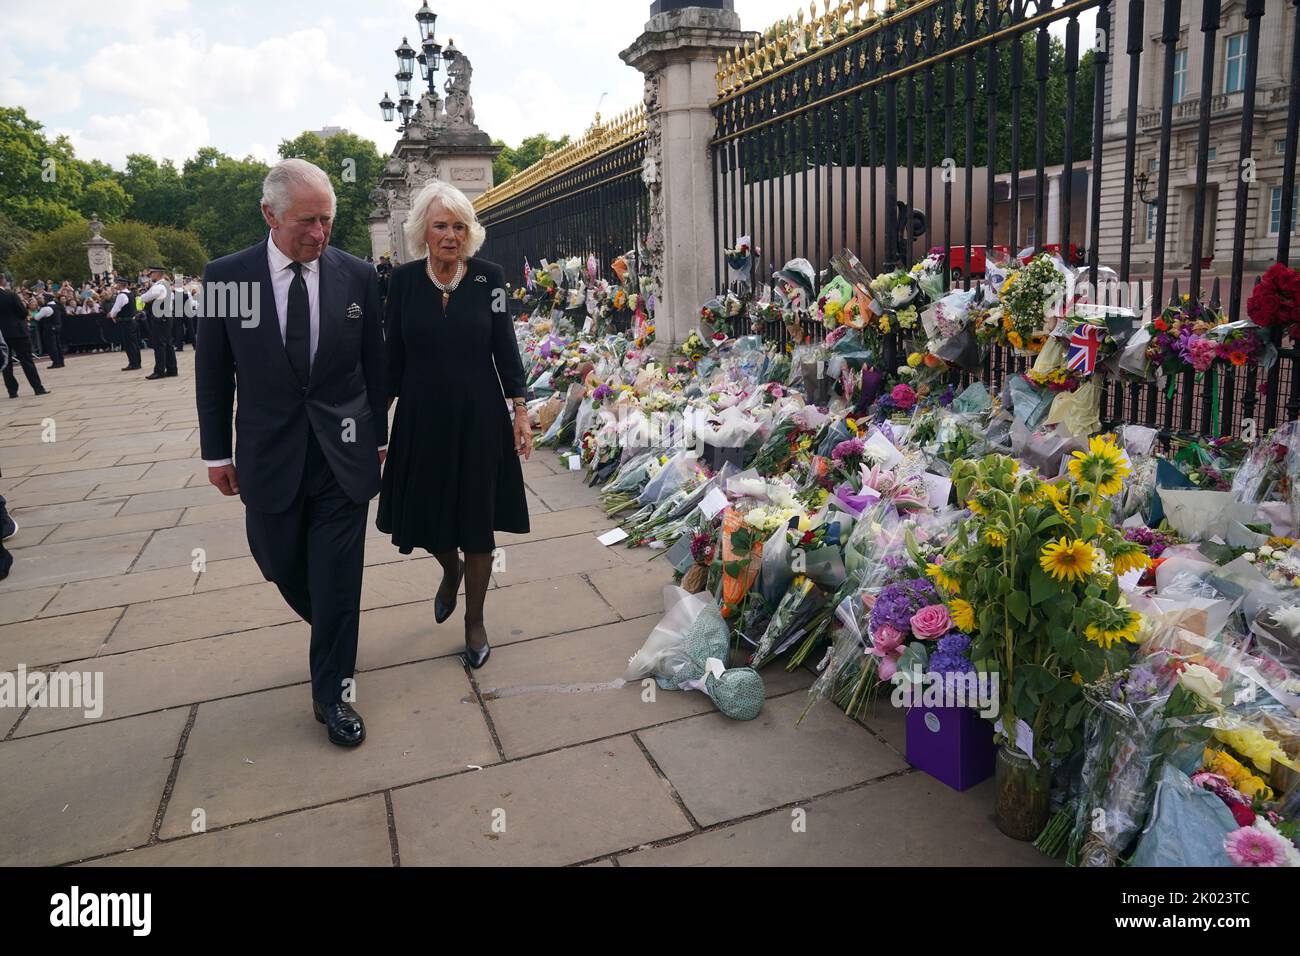 Il re Carlo III e la regina vedano i tributi lasciati fuori Buckingham Palace, Londra, dopo la morte della regina Elisabetta II il giovedì. Data immagine: Venerdì 9 settembre 2022. Foto Stock